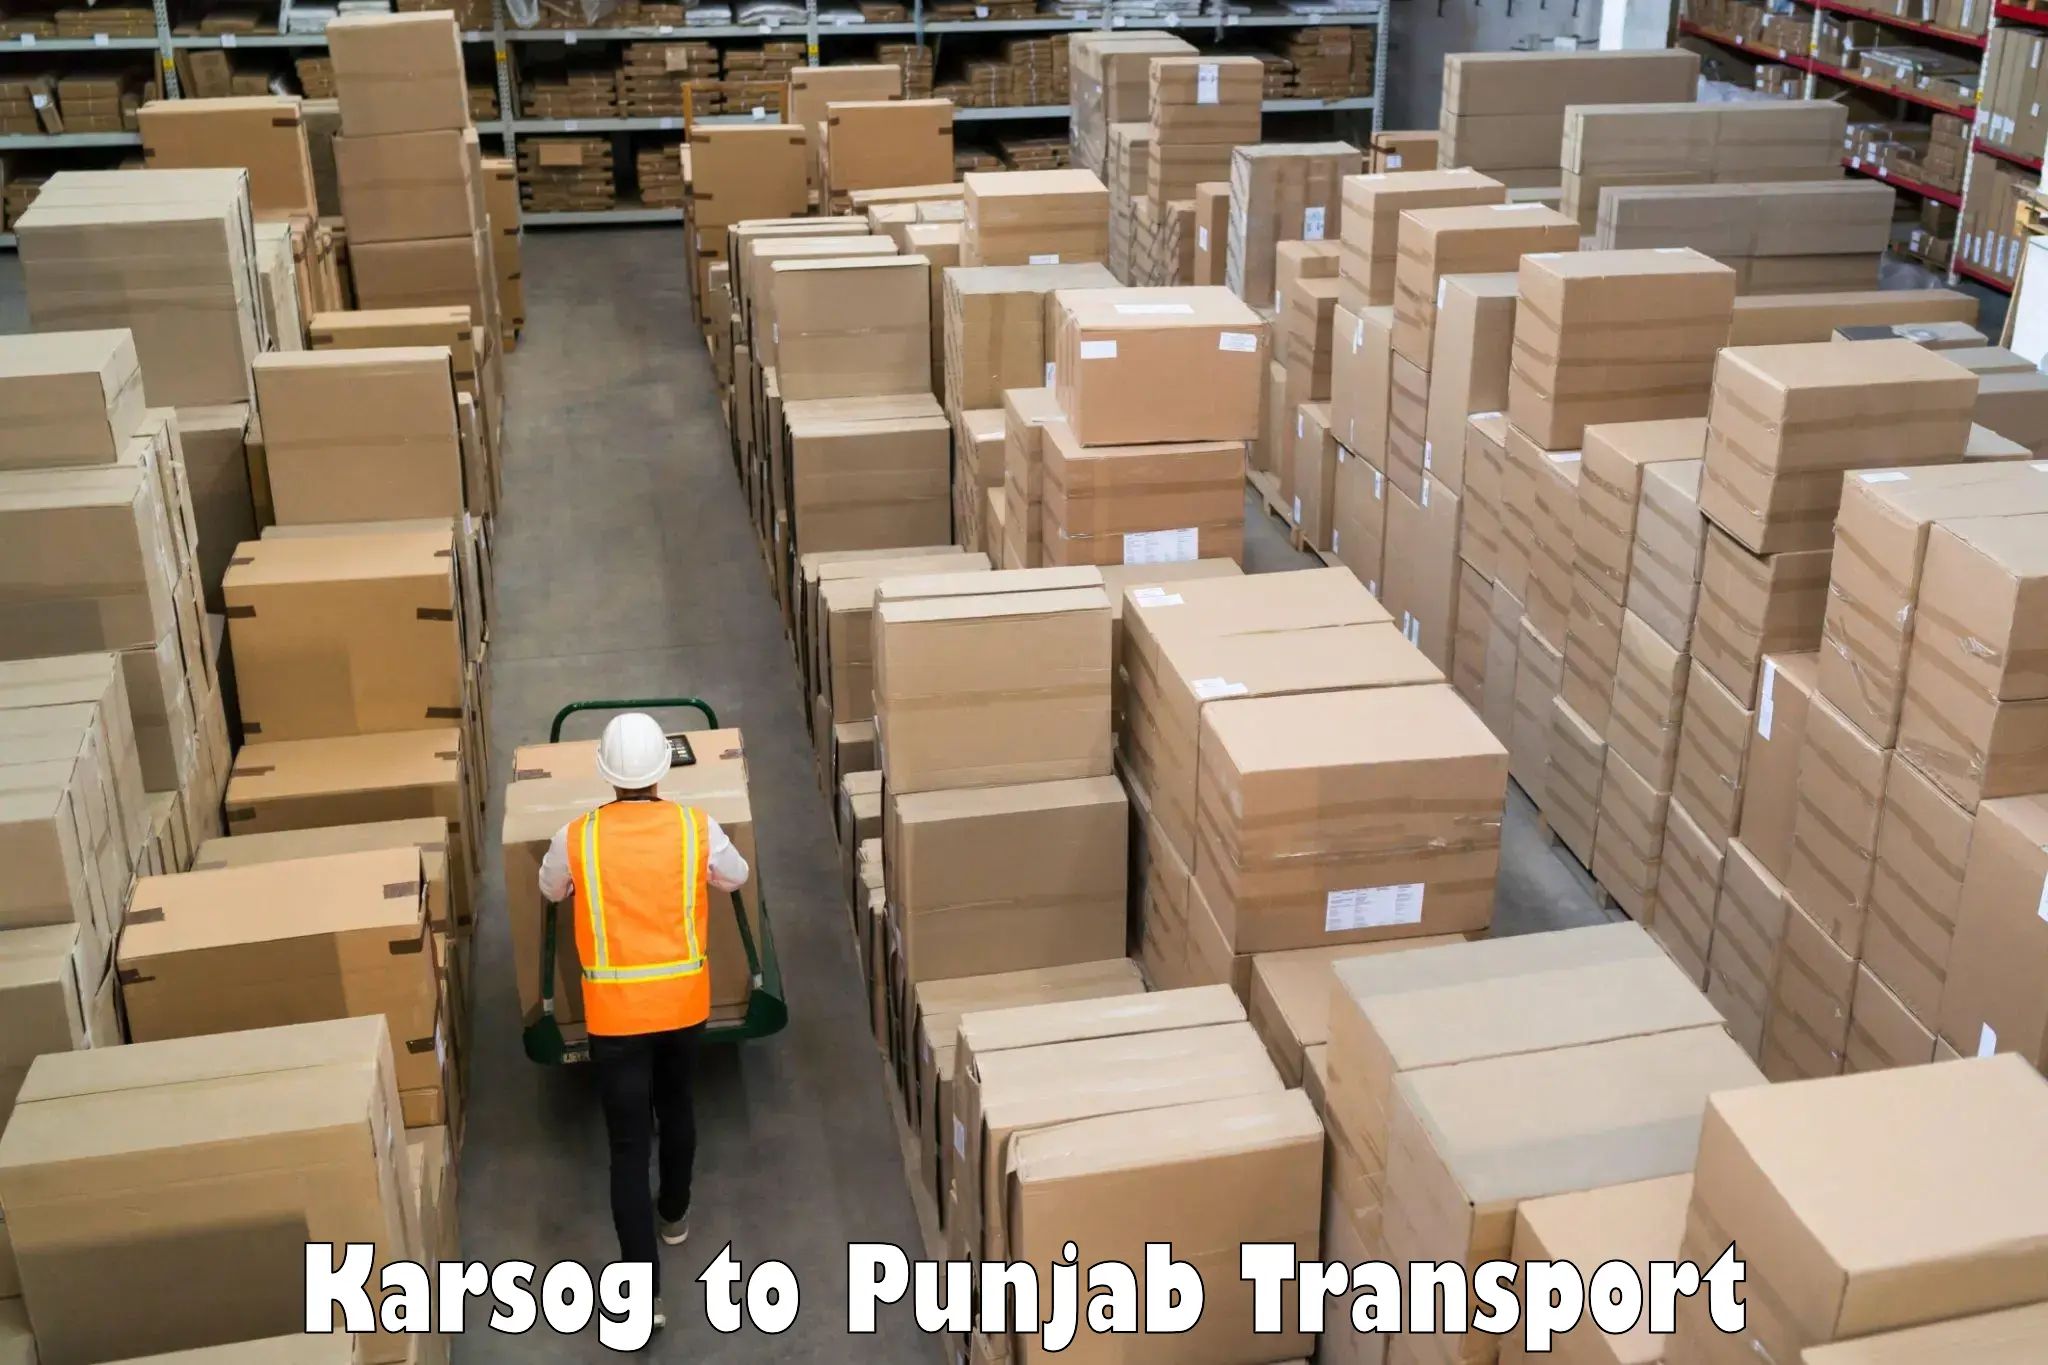 Container transport service Karsog to Jalandhar